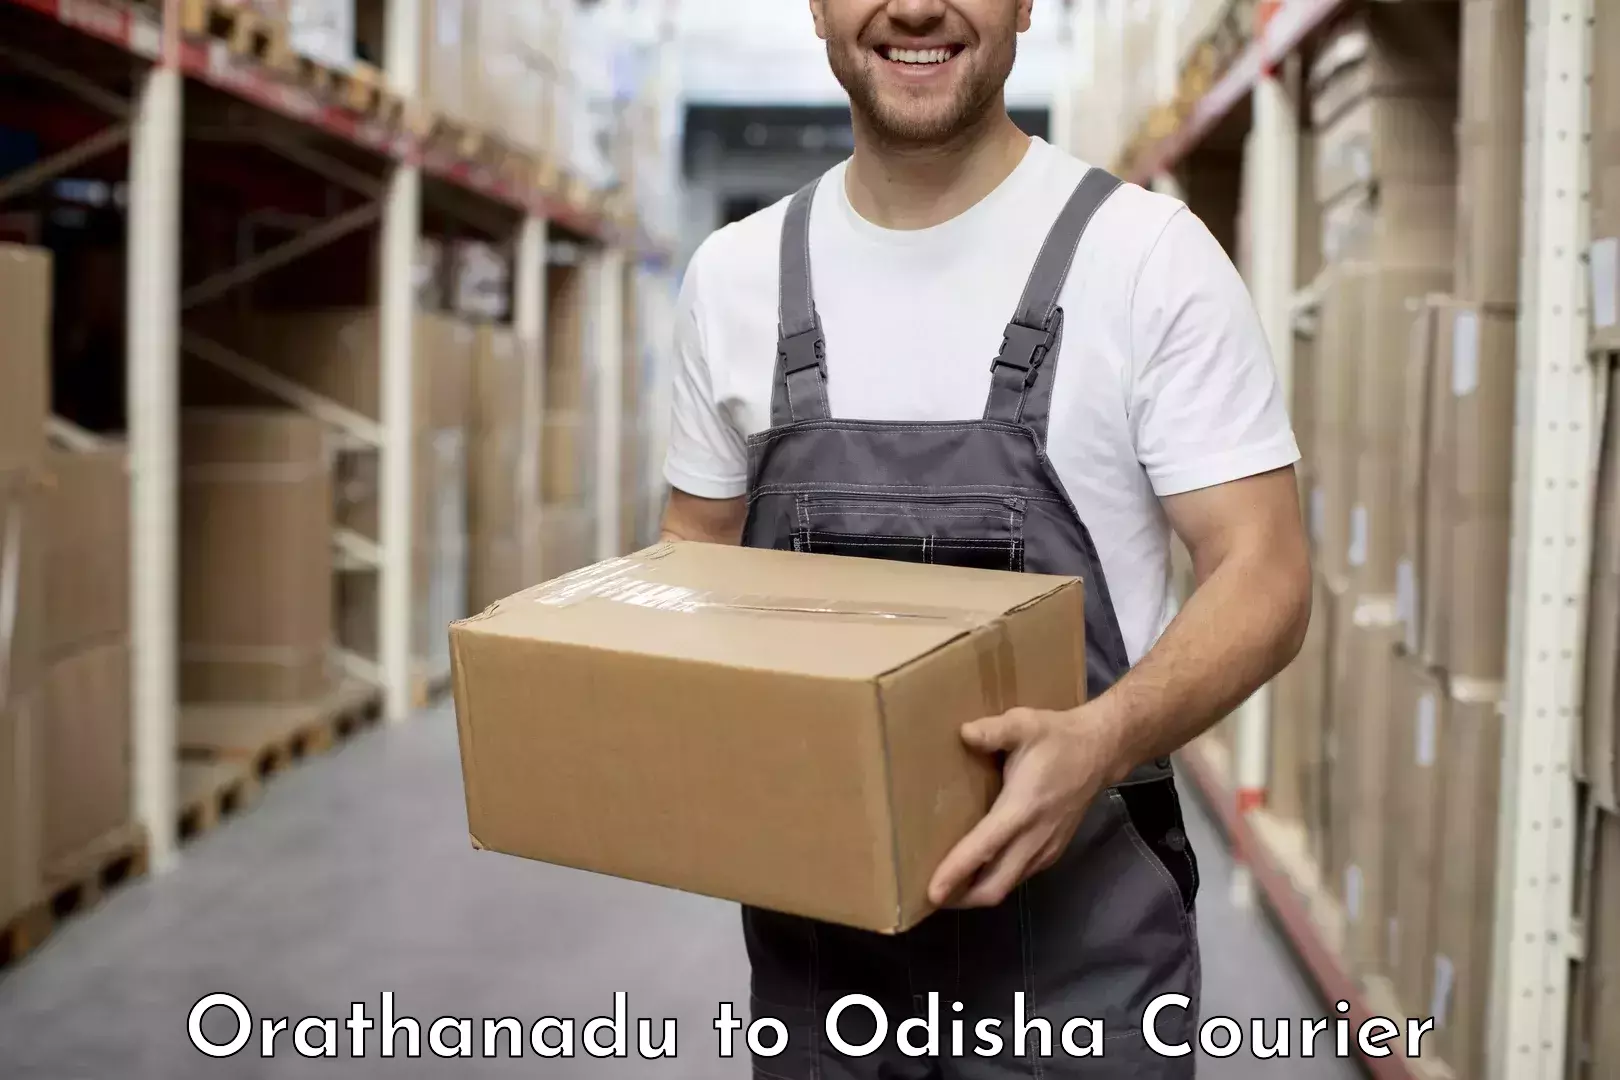 Professional courier handling Orathanadu to Delang